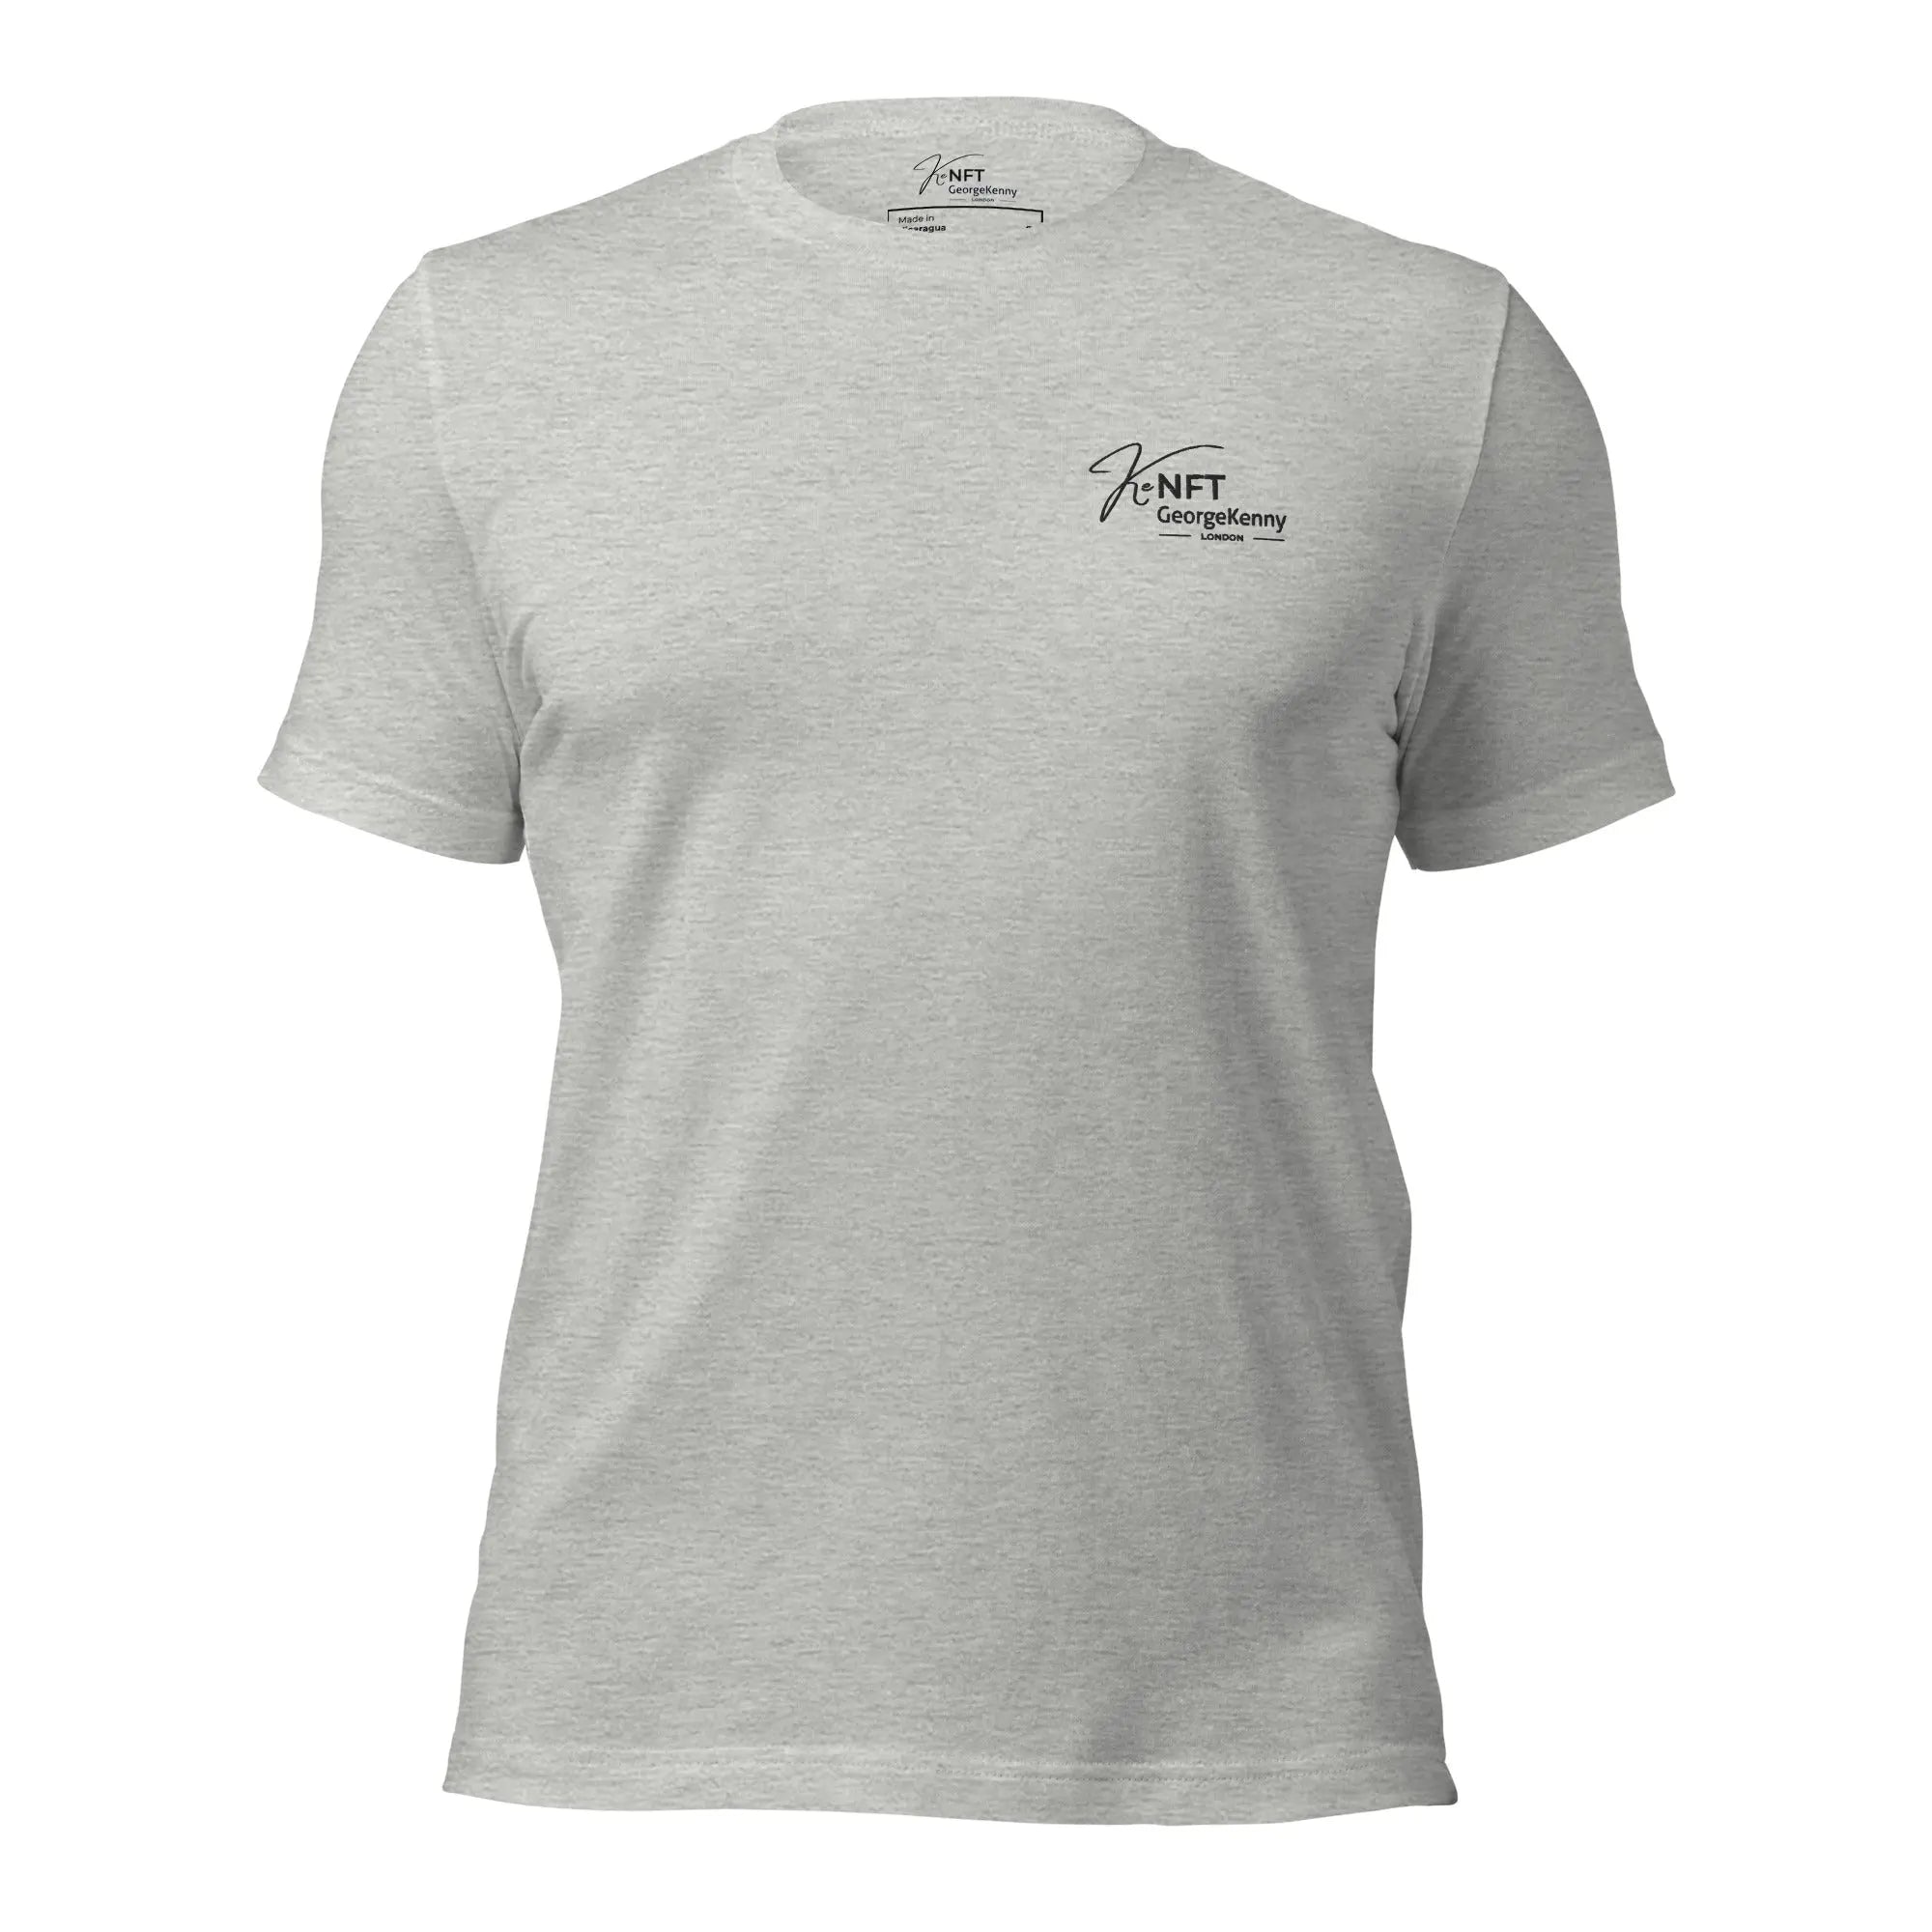 Unisex t-shirt | Neutralised Offset | Light Tone GeorgeKenny Design